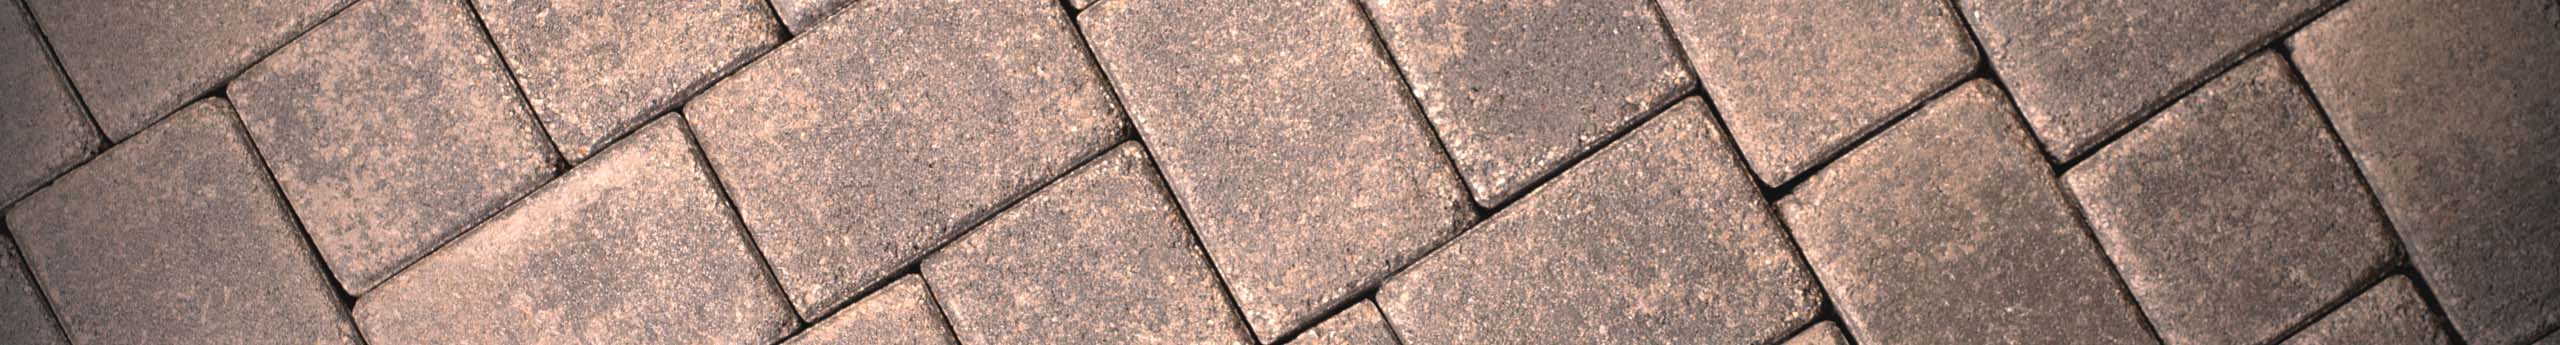 tan brick paver close up